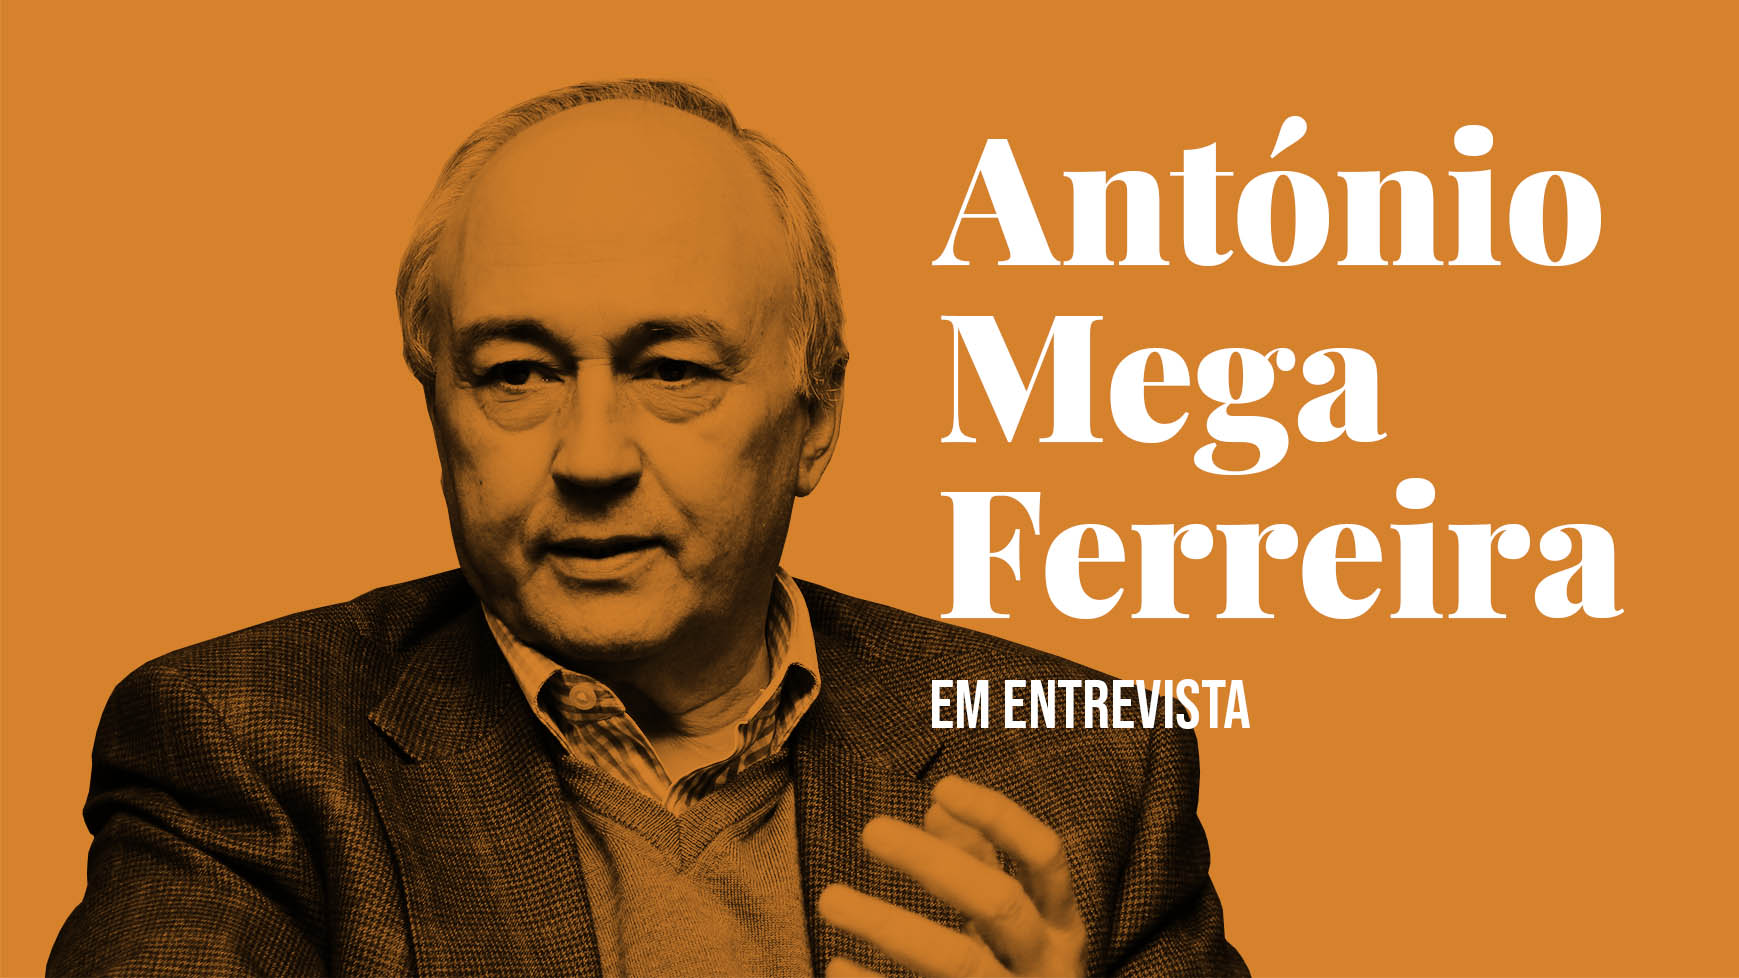 António Mega Ferreira em entrevista # 2/2 — «Toda a opção política deve obedecer a uma visão cultural»